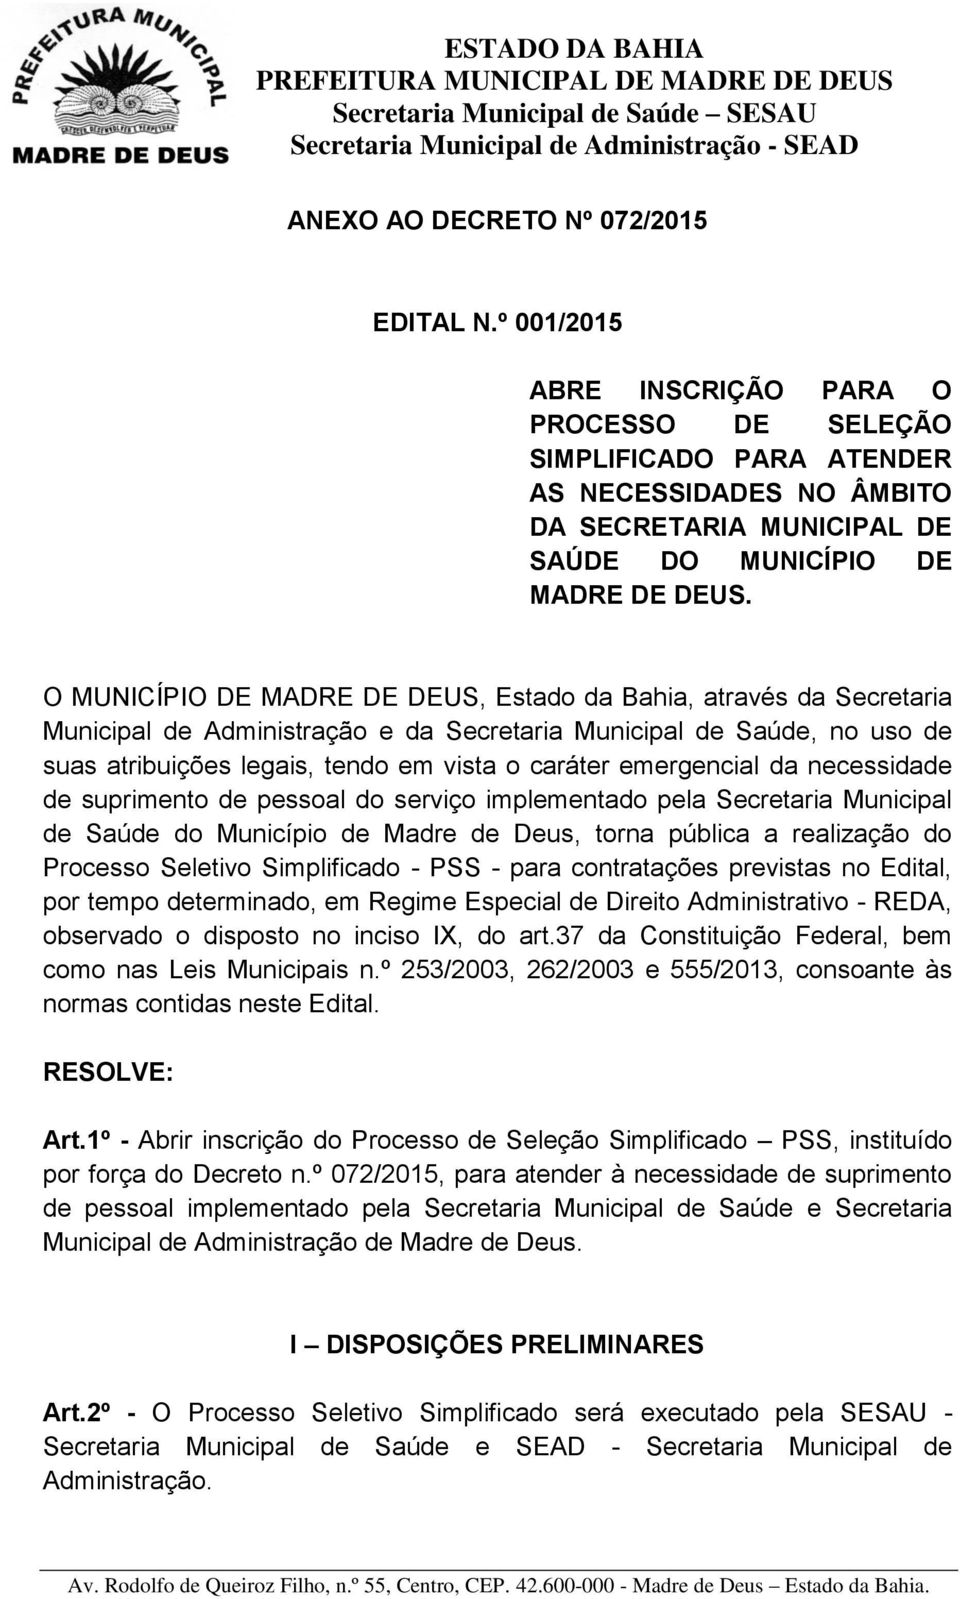 O MUNICÍPIO DE MADRE DE DEUS, Estado da Bahia, através da Secretaria Municipal de Administração e da Secretaria Municipal de Saúde, no uso de suas atribuições legais, tendo em vista o caráter